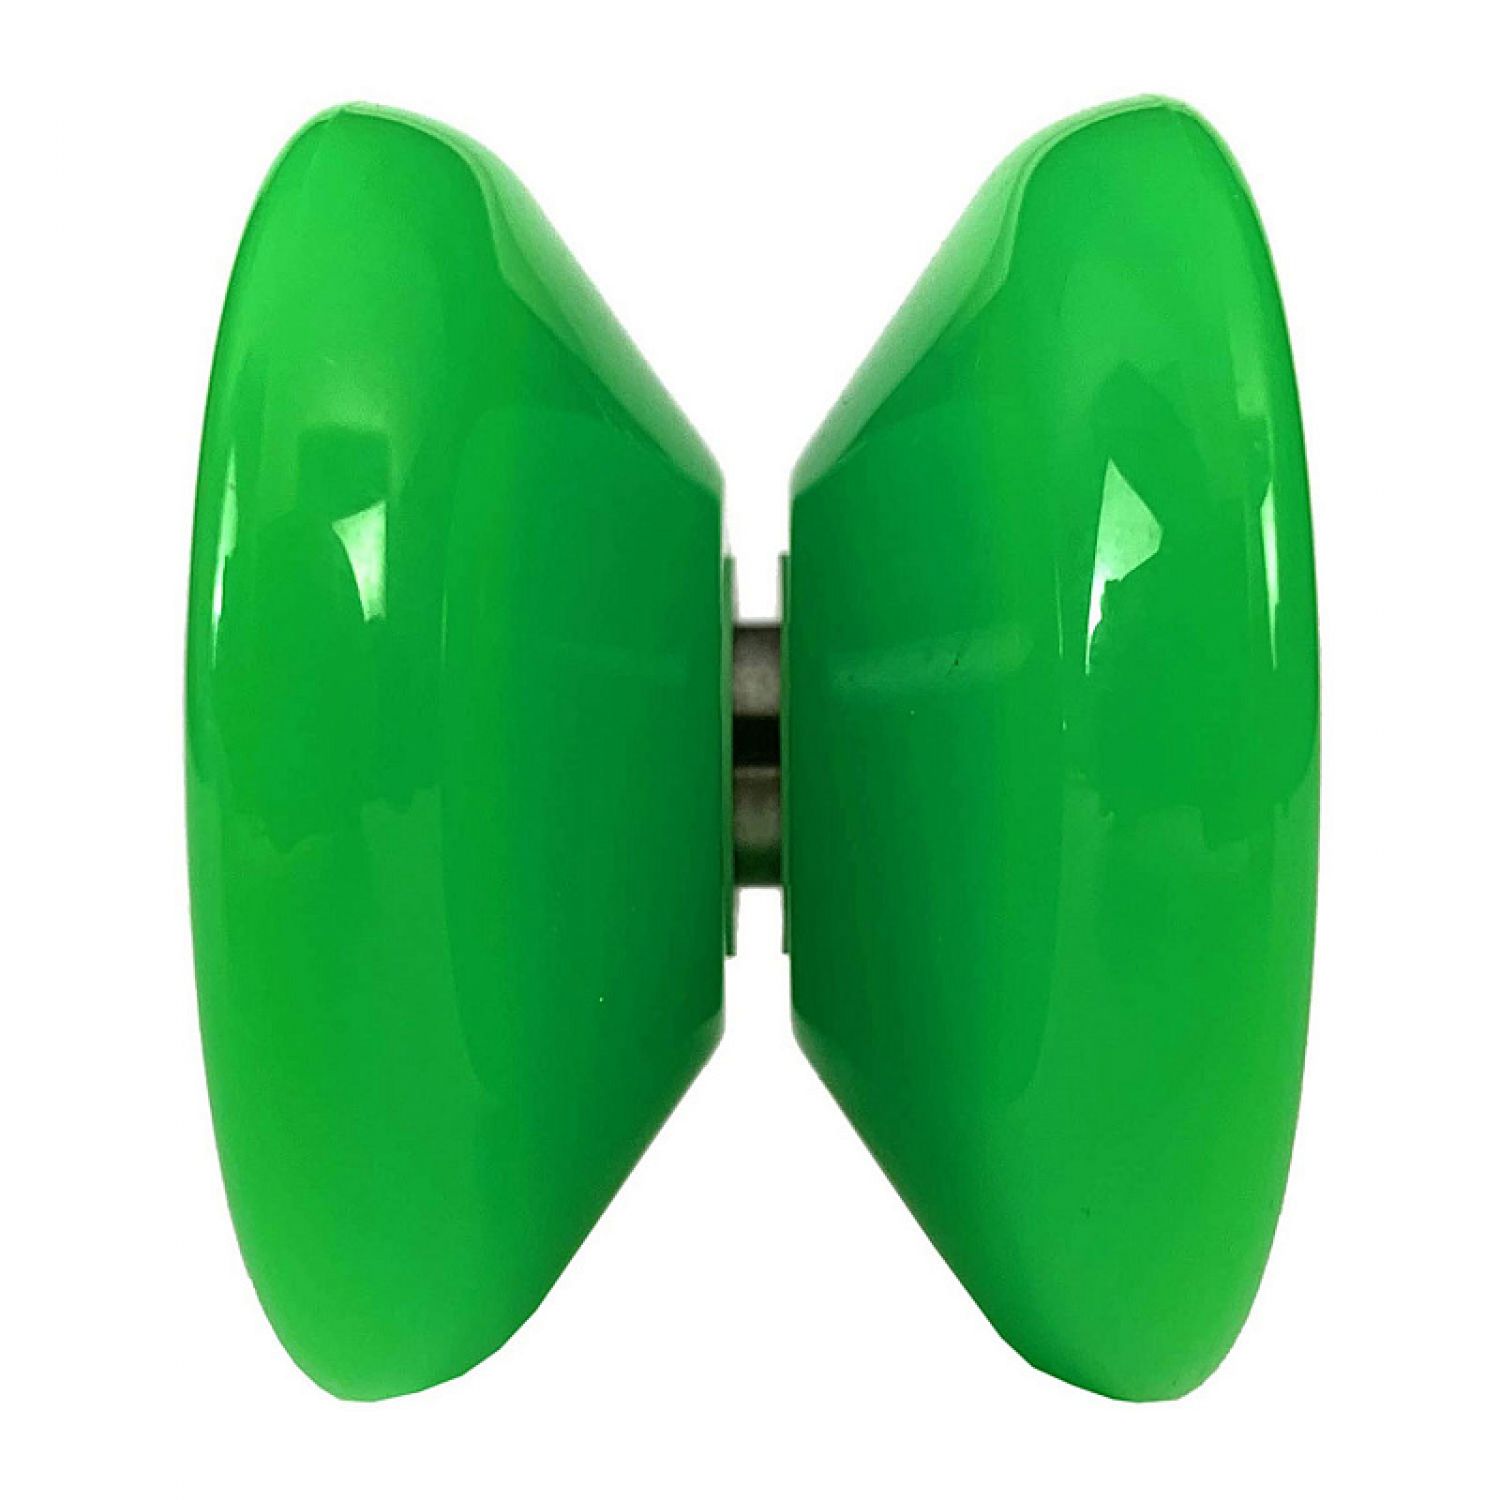 Развивающая игрушка YoYoFactory Йо-йо Arrow зеленый - фото 3